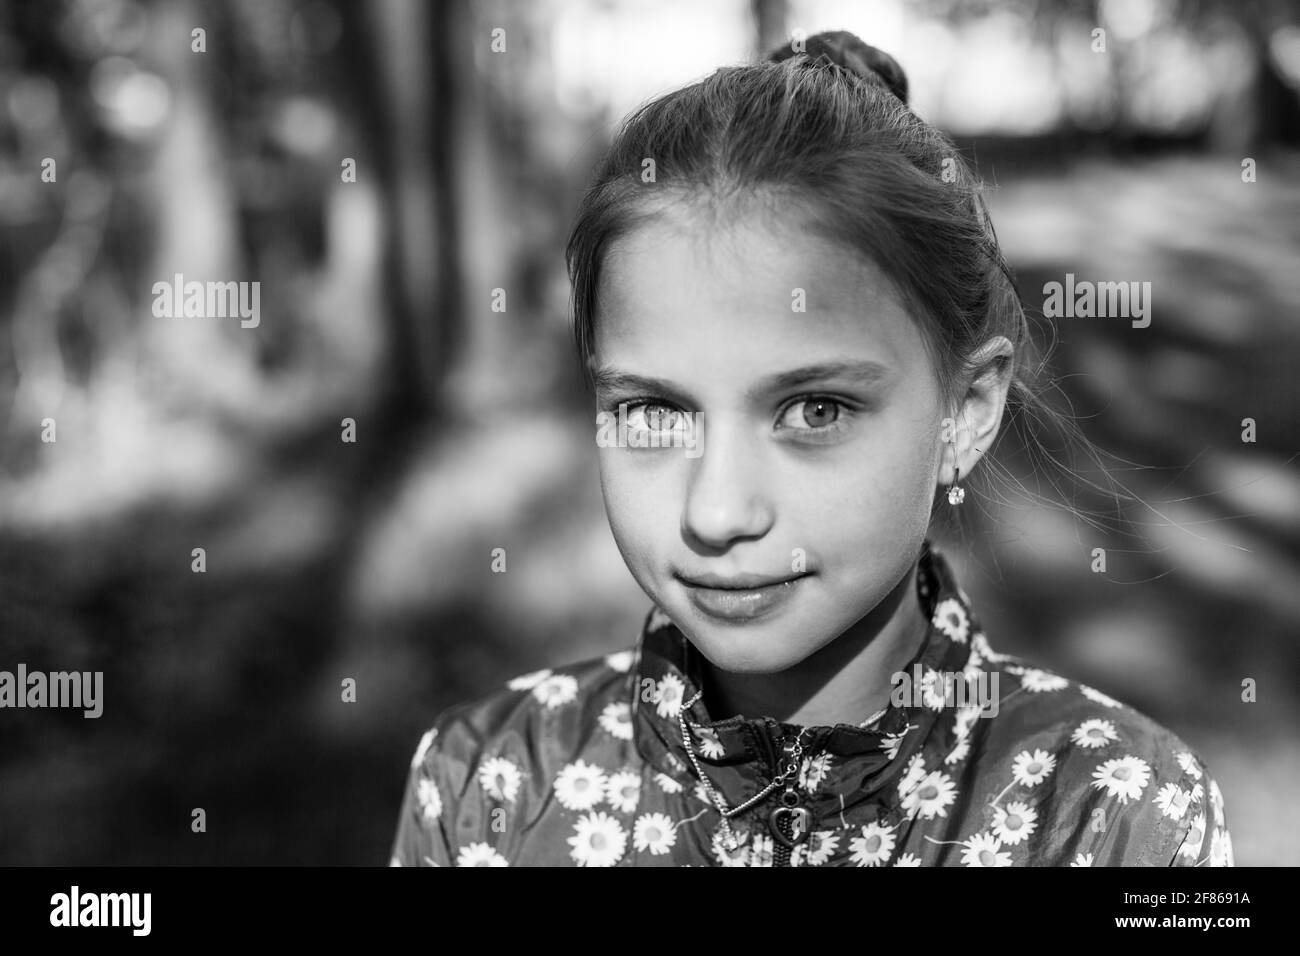 Porträt von teen Mädchen im Freien. Schwarzweiß-Foto. Stockfoto